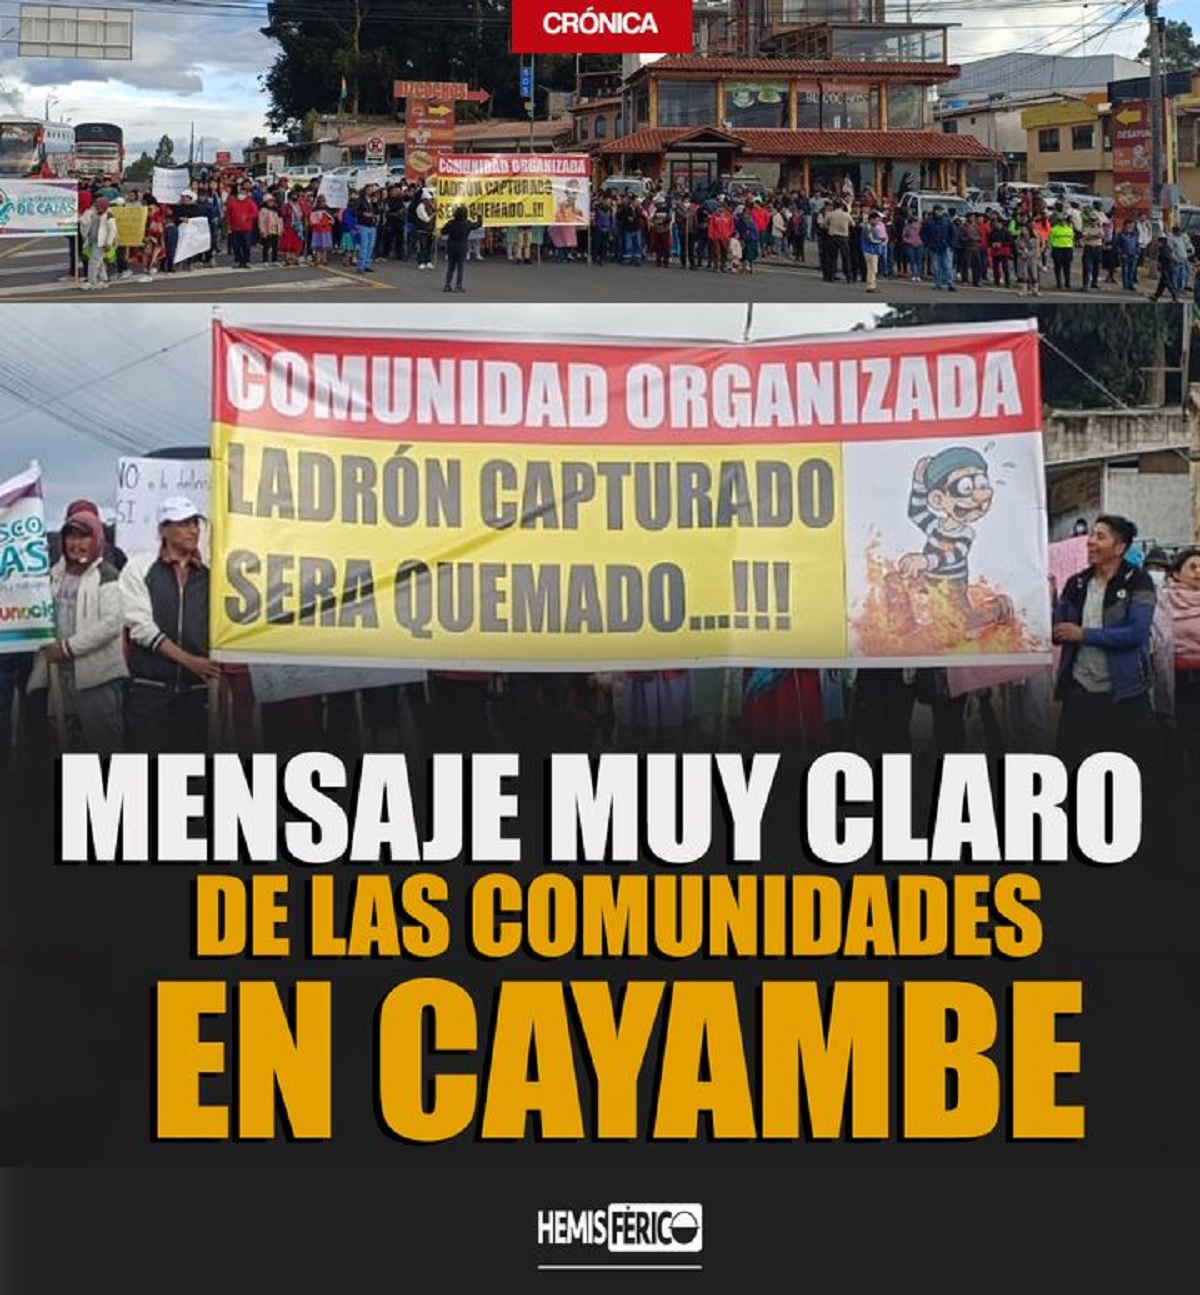 "Ladrón capturado, ladrón quemado": ecuatorianos toman la justicia en sus manos